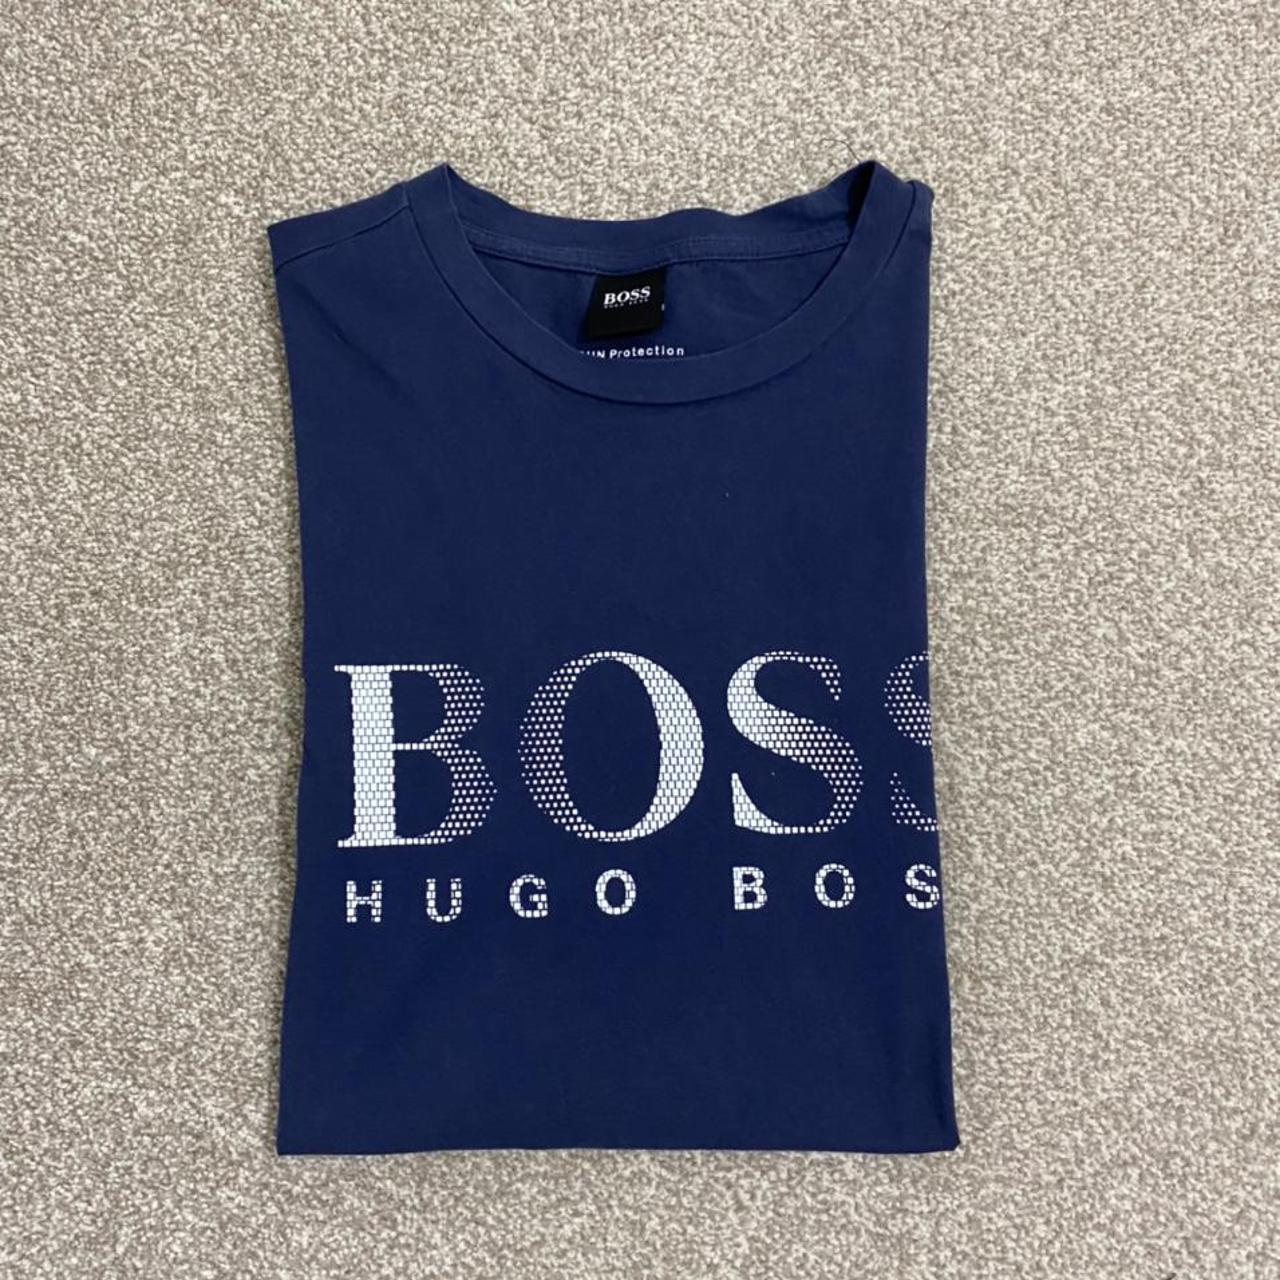 Hugo Boss Men's White and Blue T-shirt